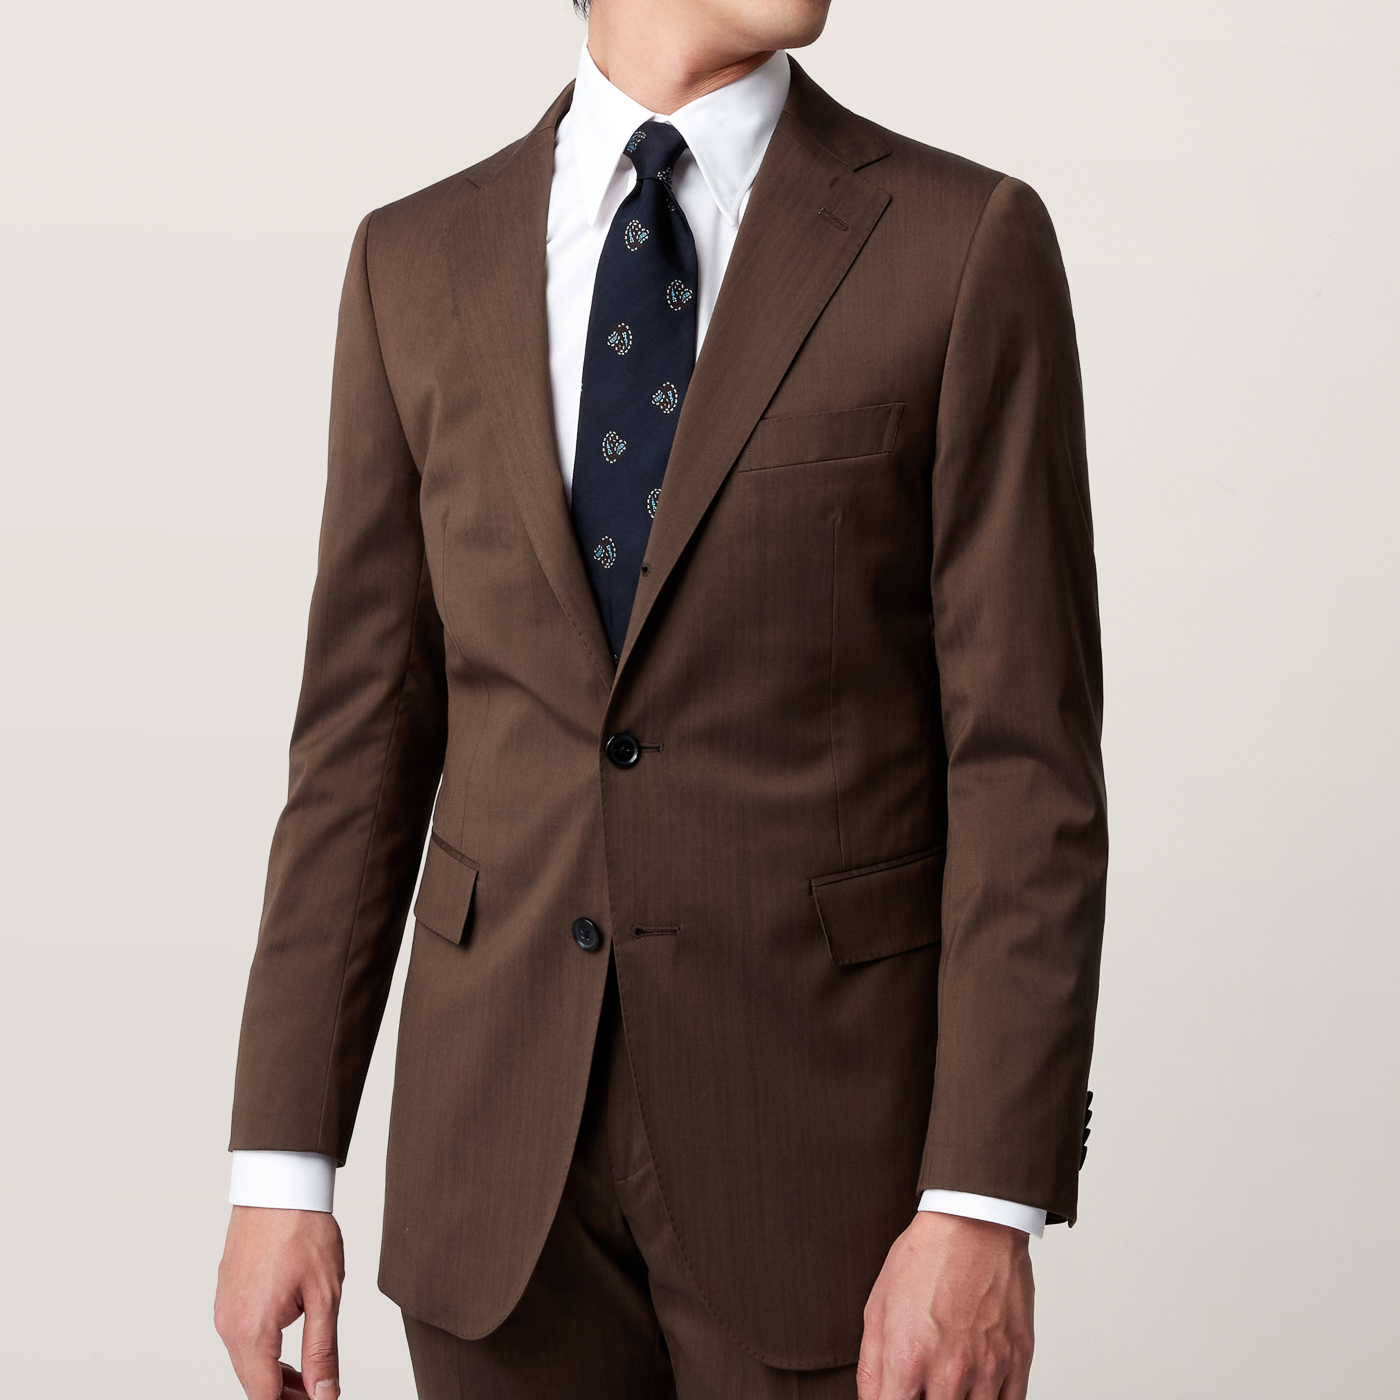 販売の専門店 *3-YE034 ボリオリ サマーウール ブラウン スーツ - スーツ